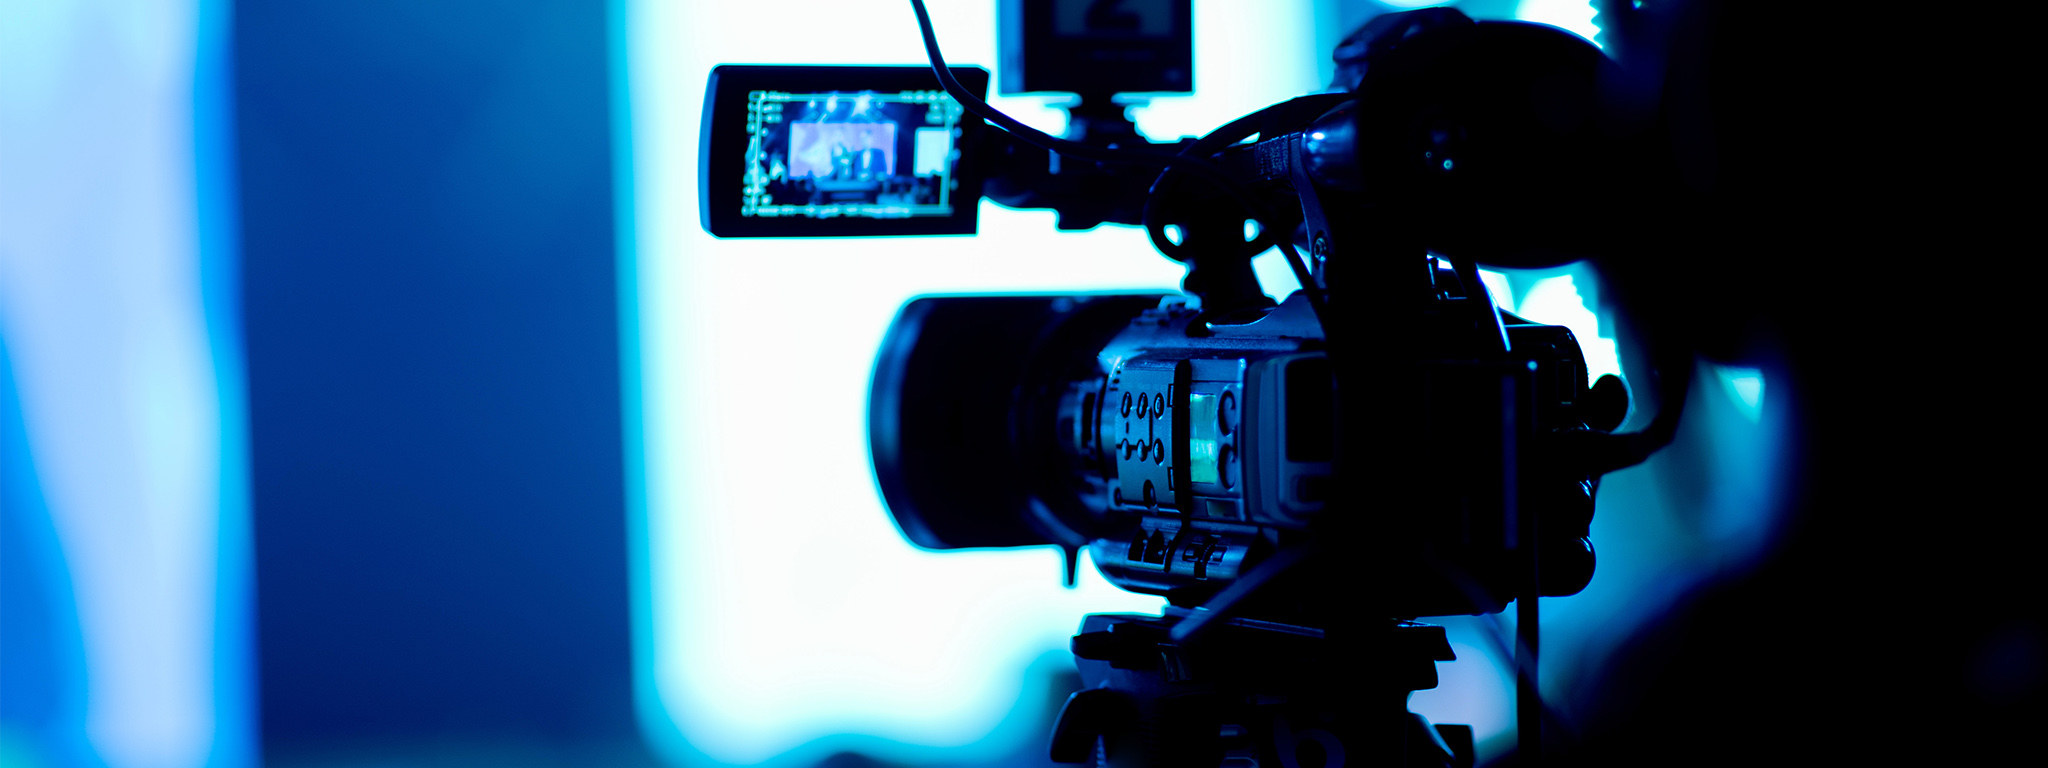 Uma pessoa desfocada opera uma câmera em uma sala escura com vários periféricos conectados, um display que aparece em um braço dobrável.